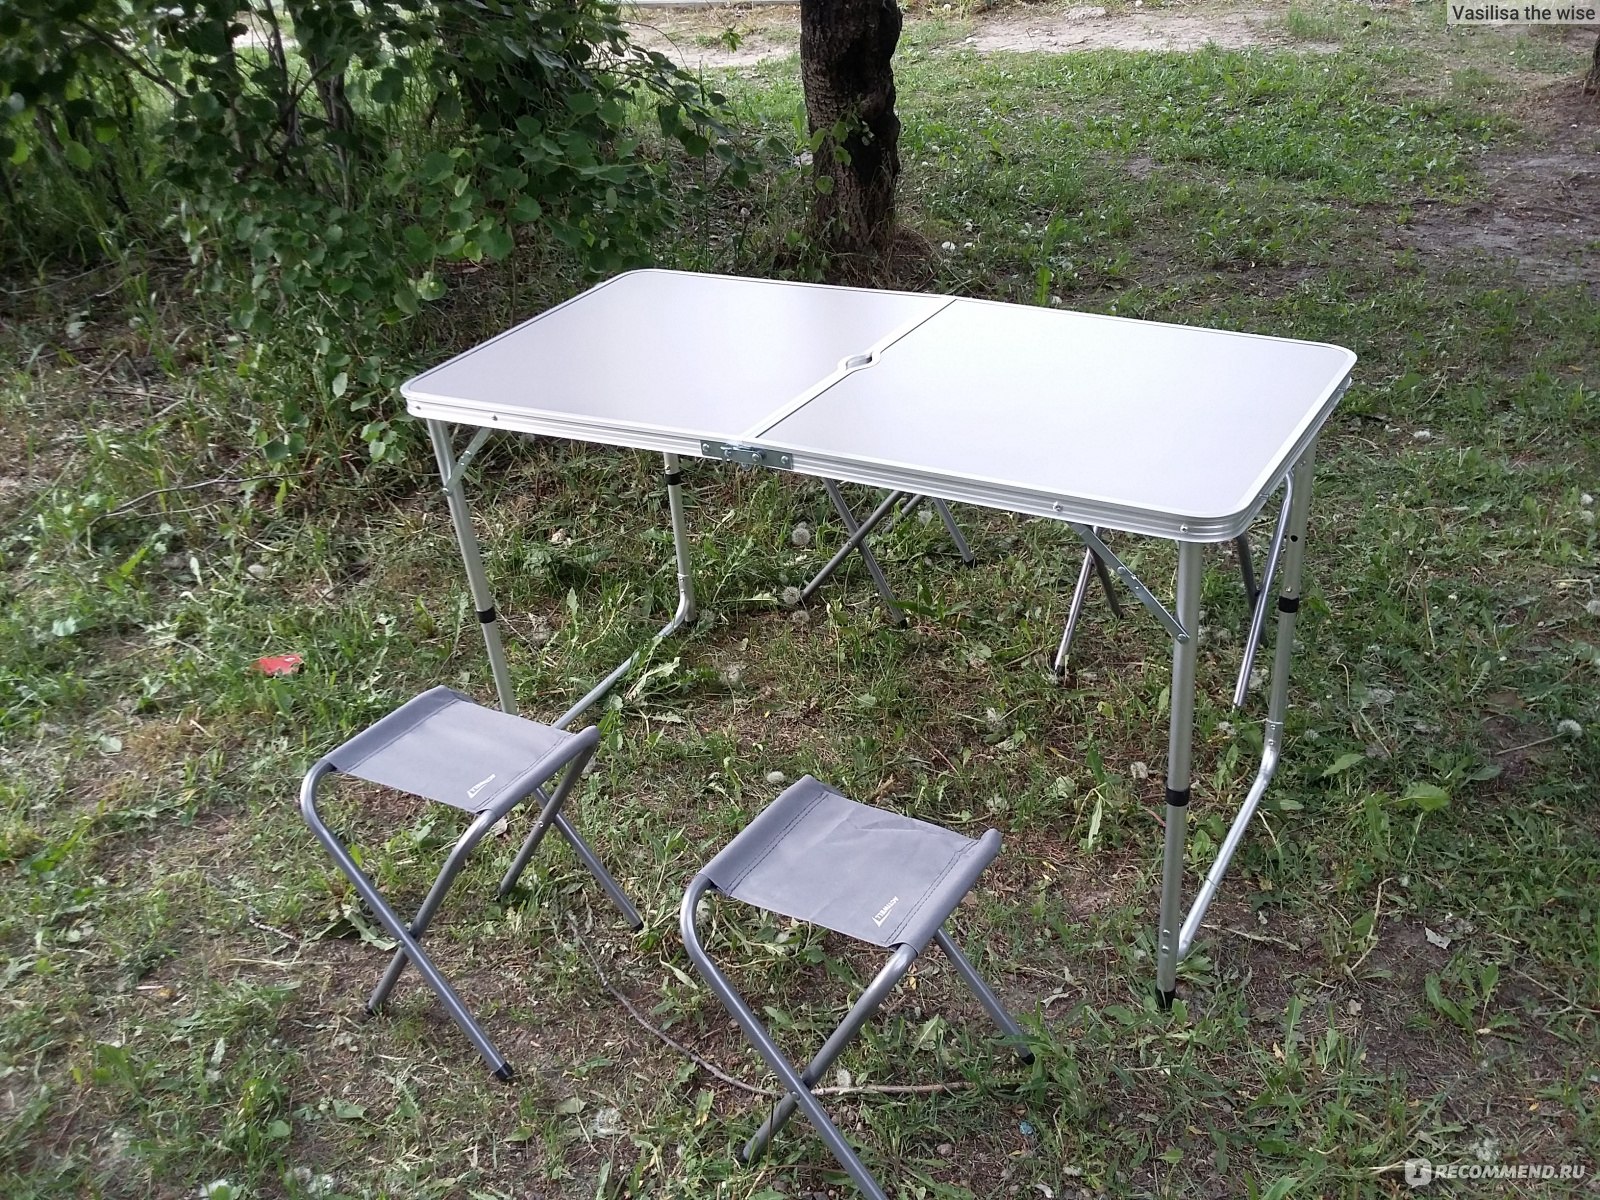 Набор для пикника Actiwell складной стол и 4 стула, серый, арт. FSET-01, Китай